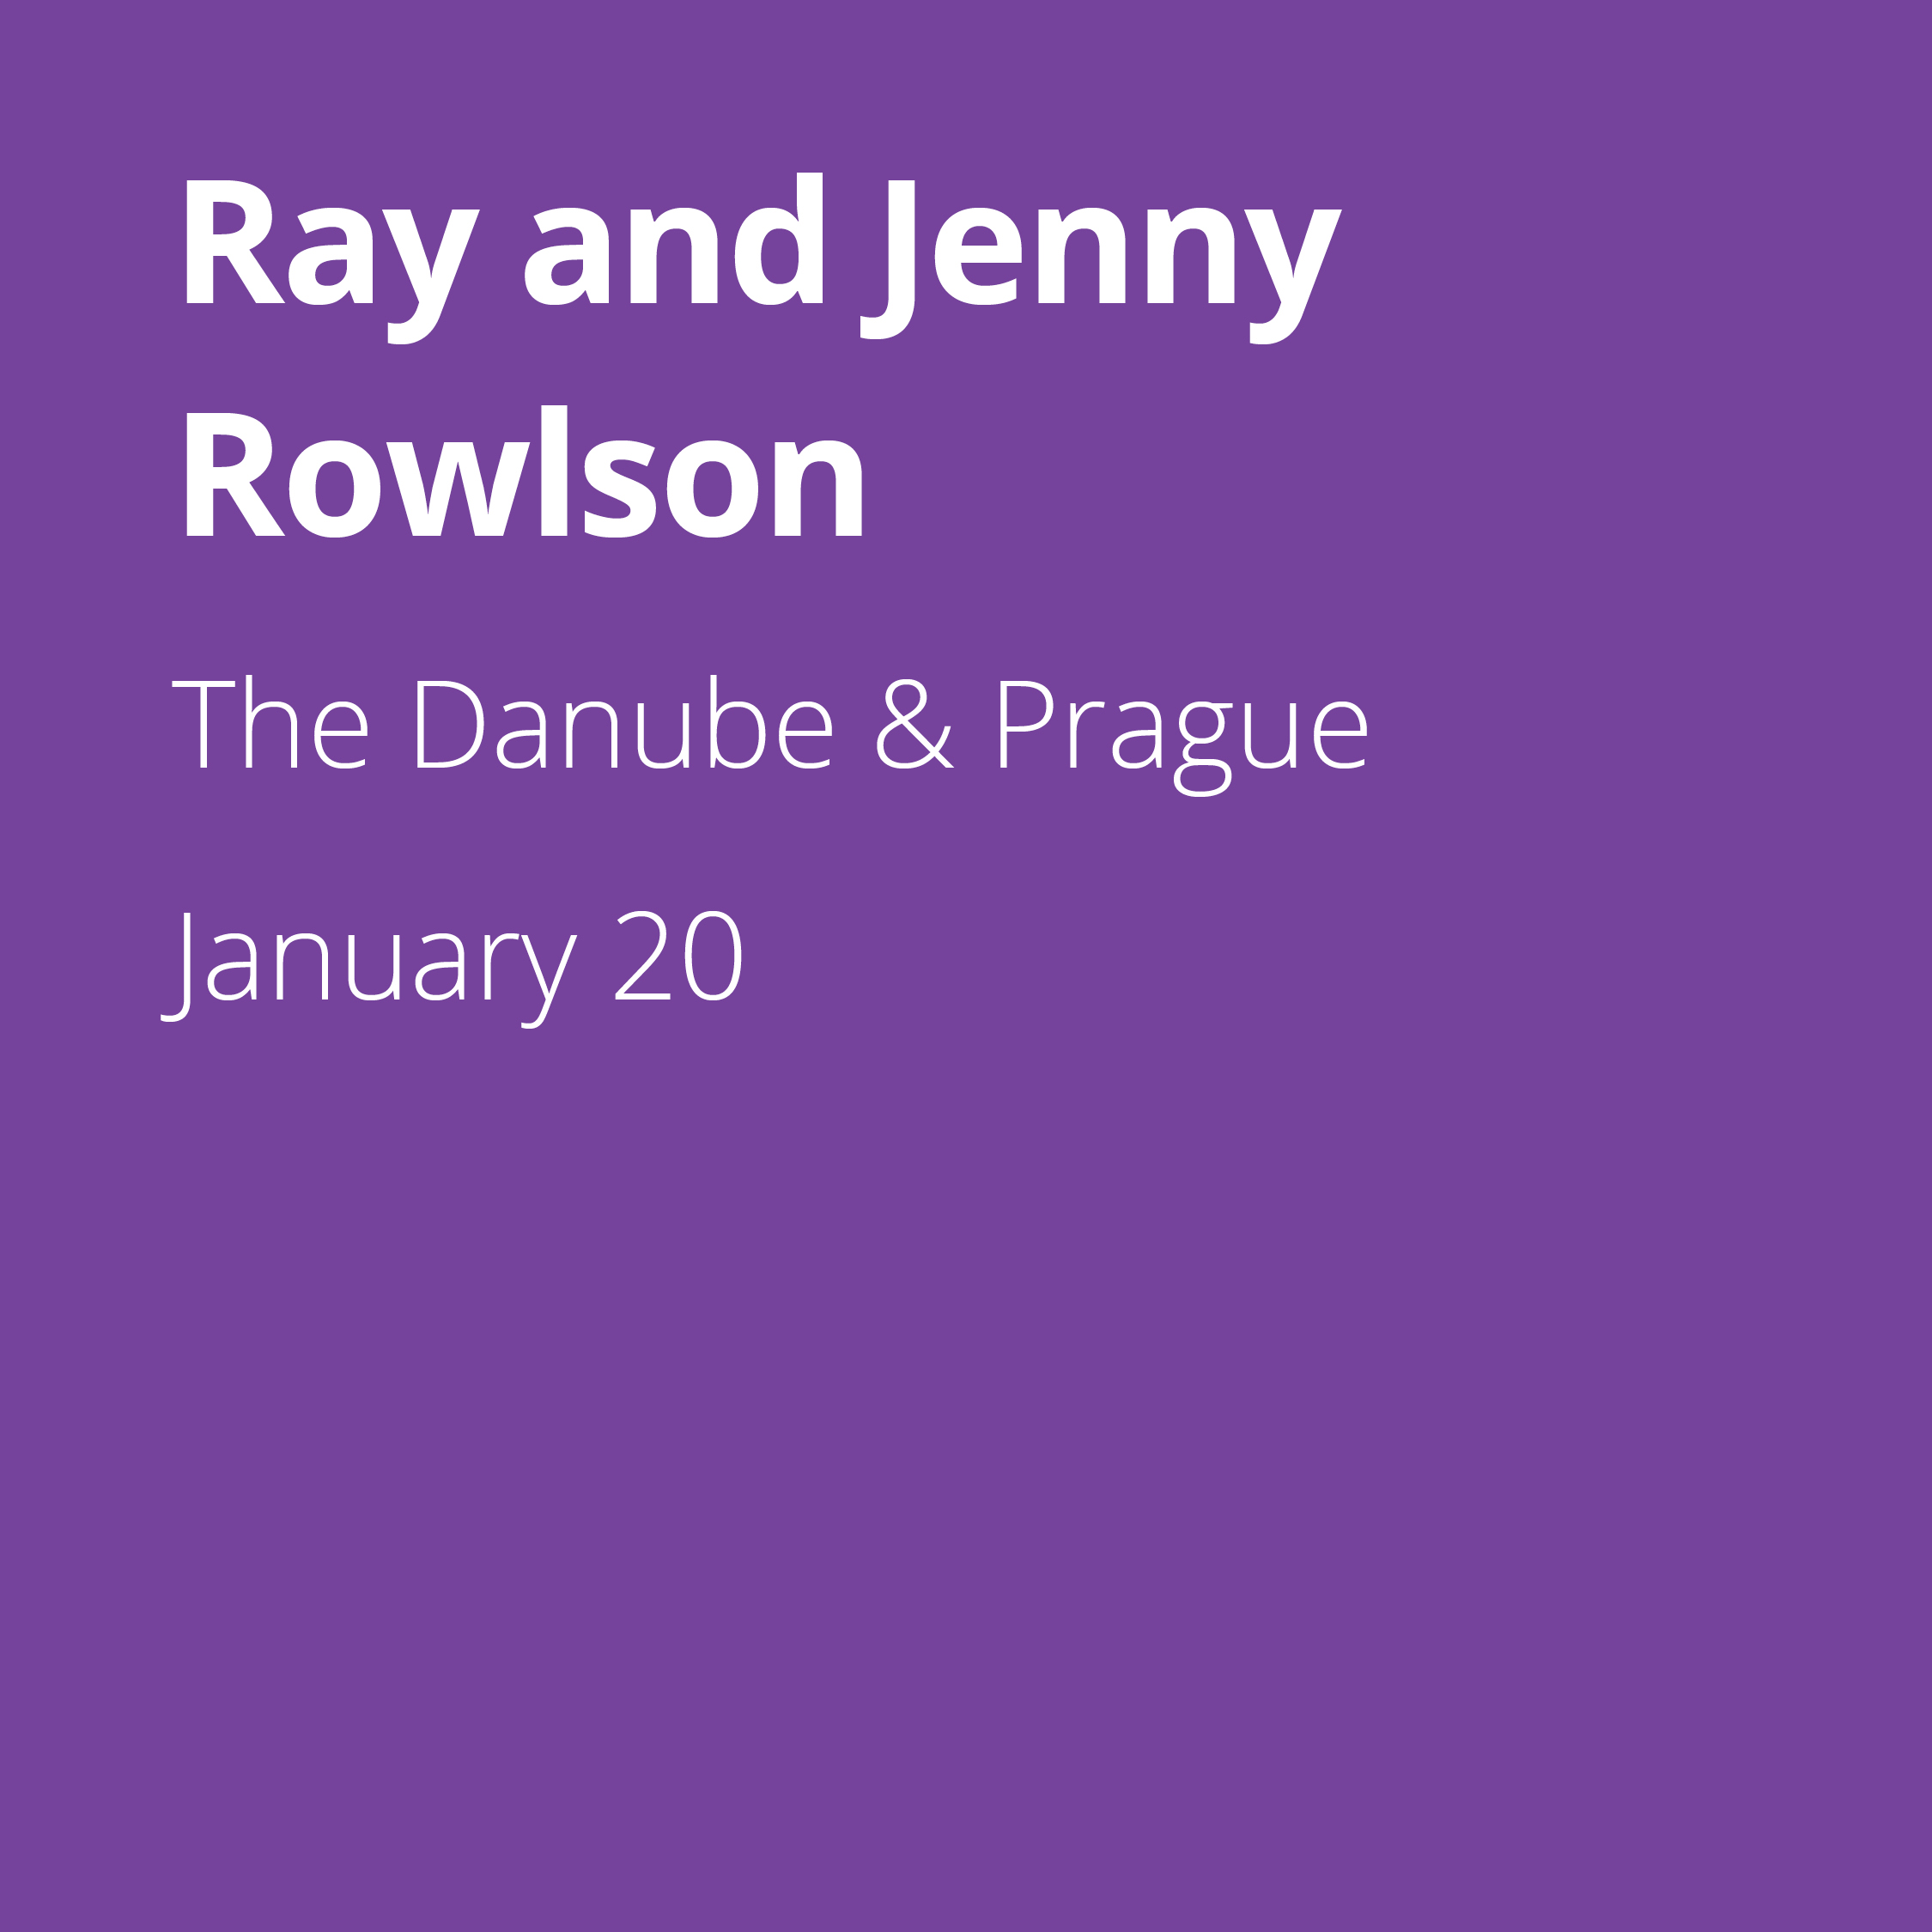 Ray and Jenny Rowlson